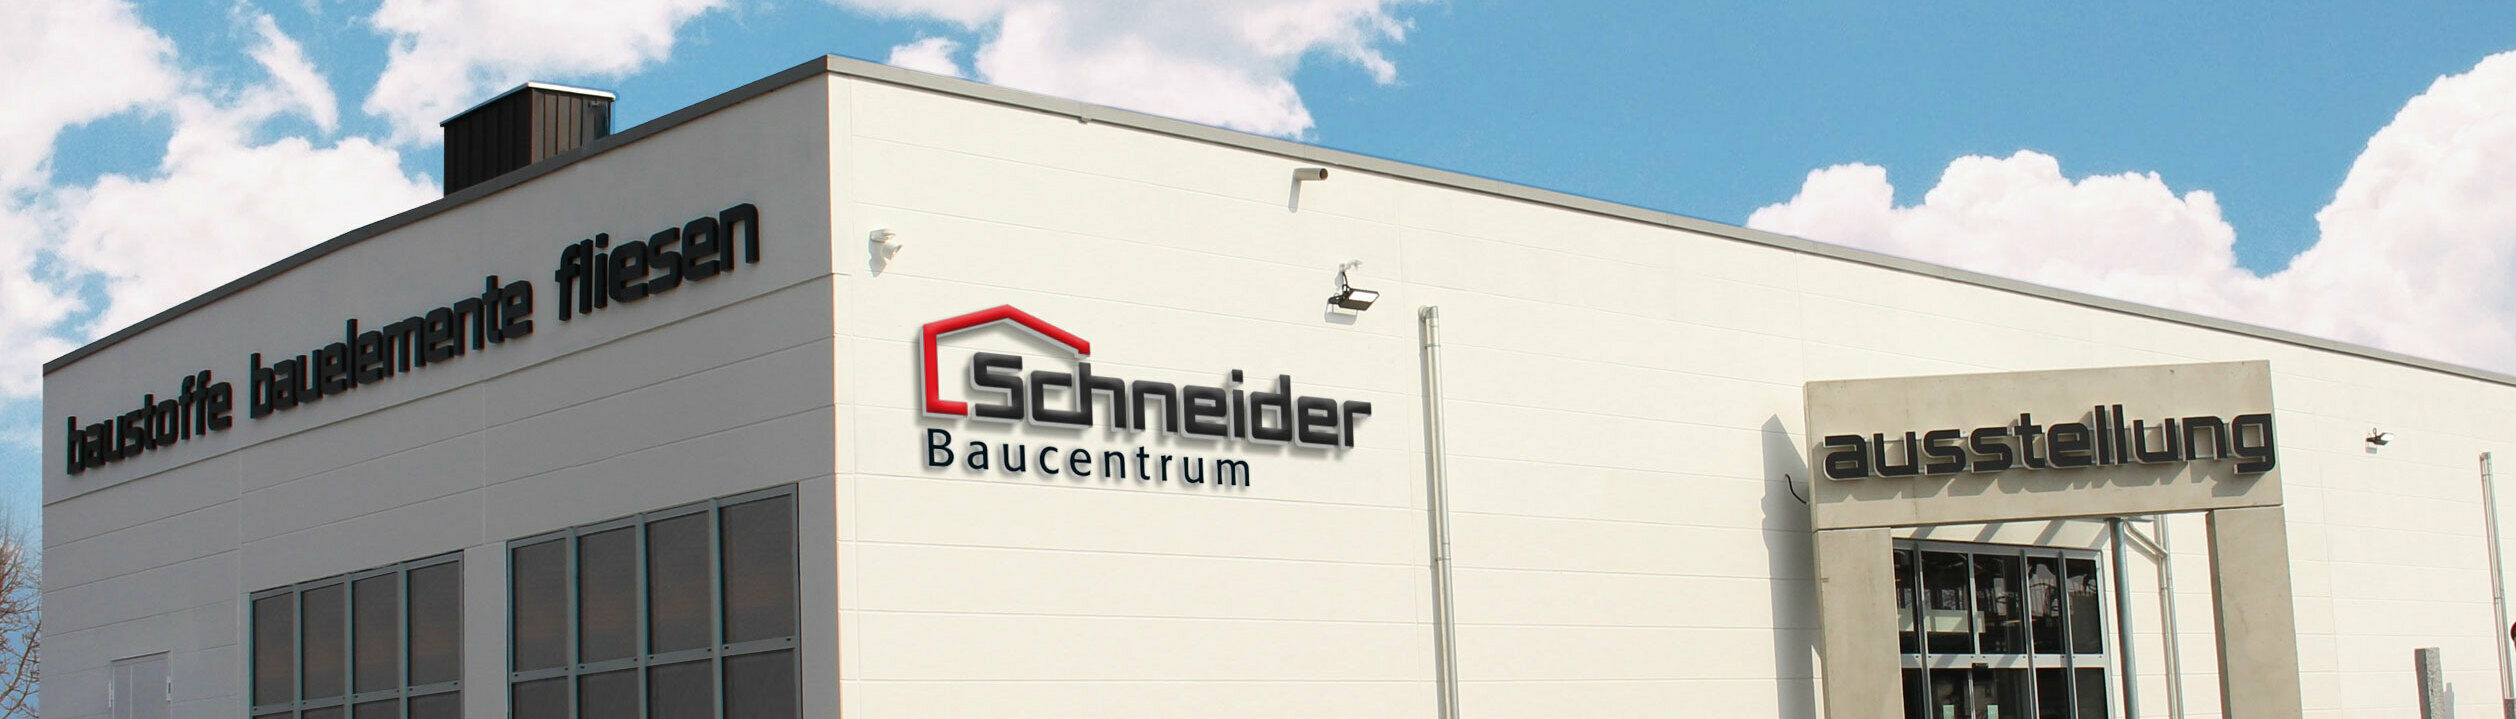 Schneider Baucentrum Bruckmühl